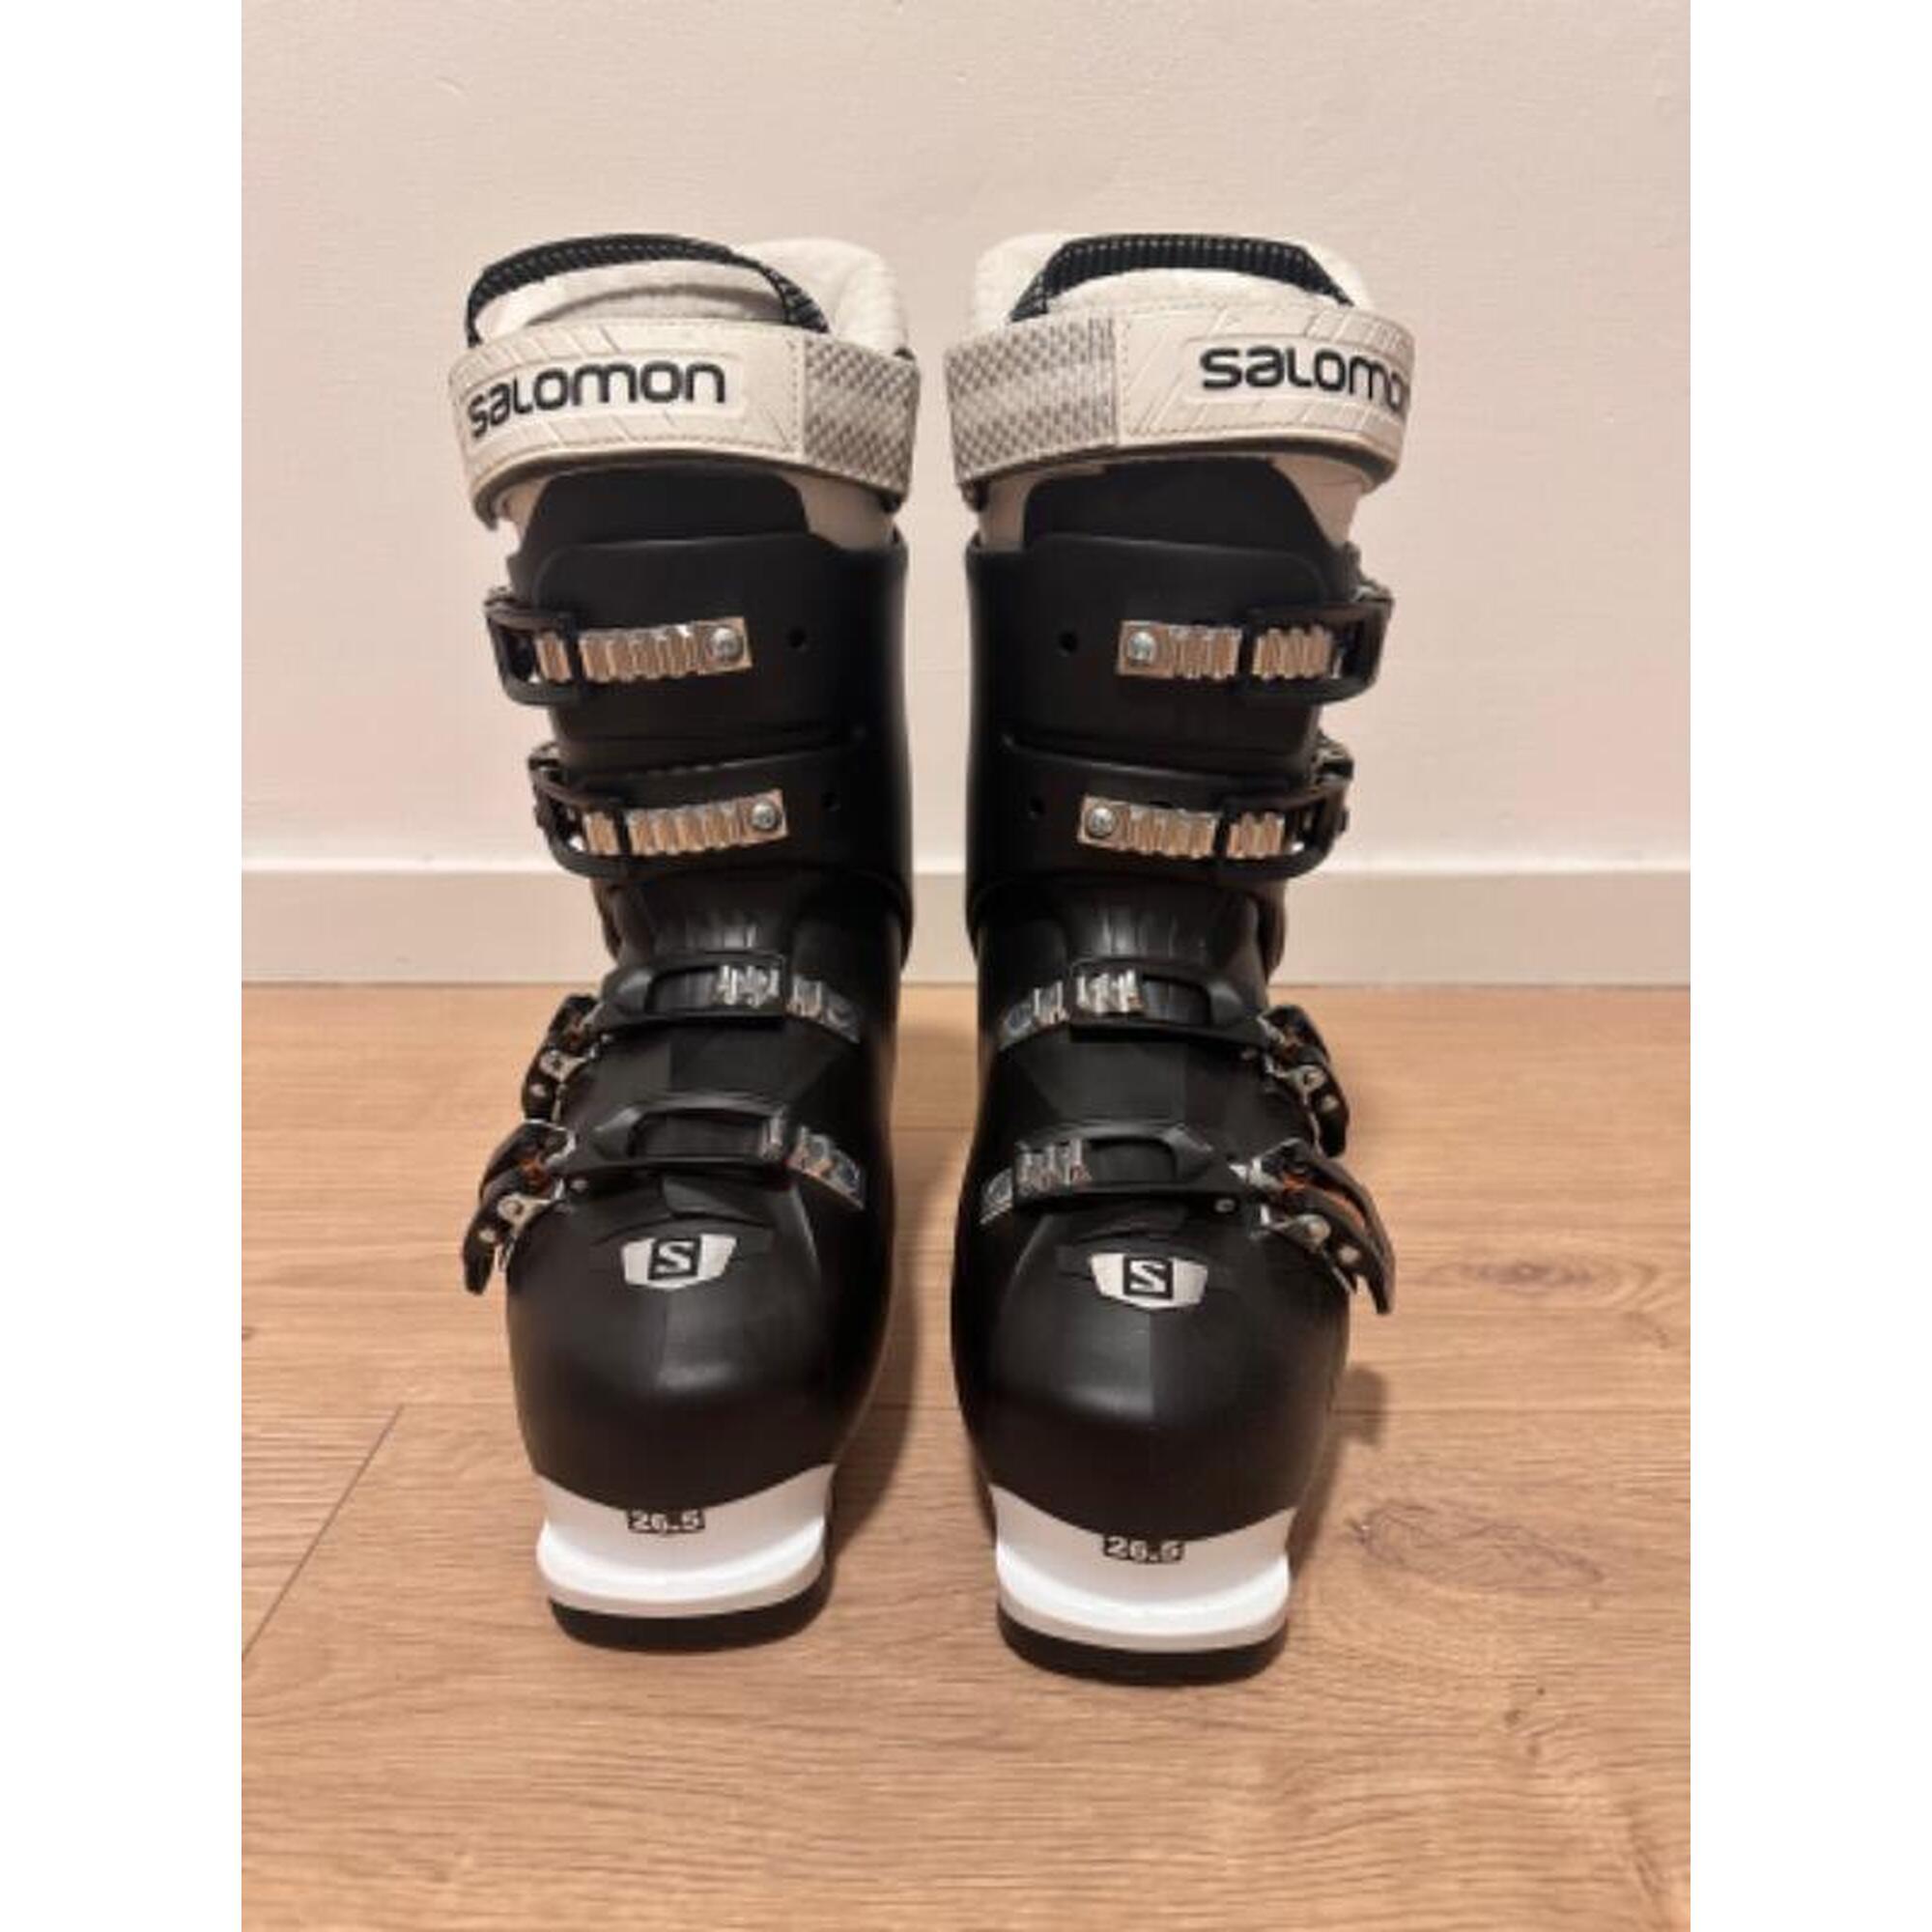 C2C - Salomon skischoenen